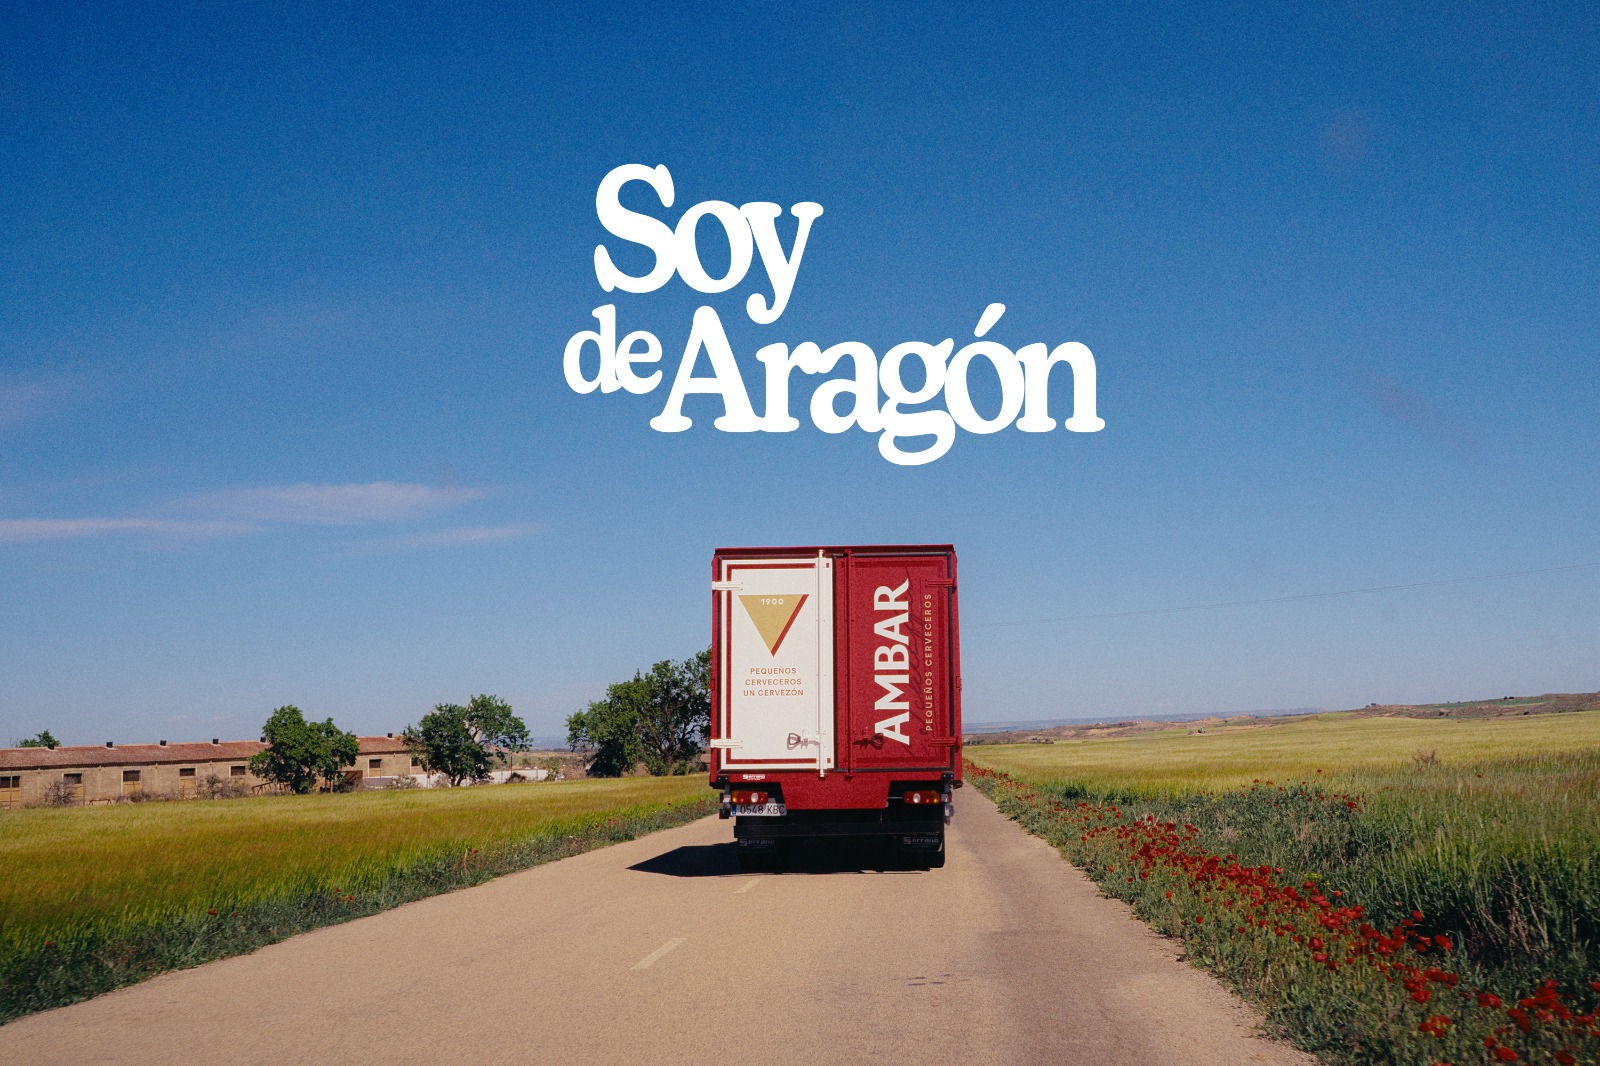 Soy de Aragón